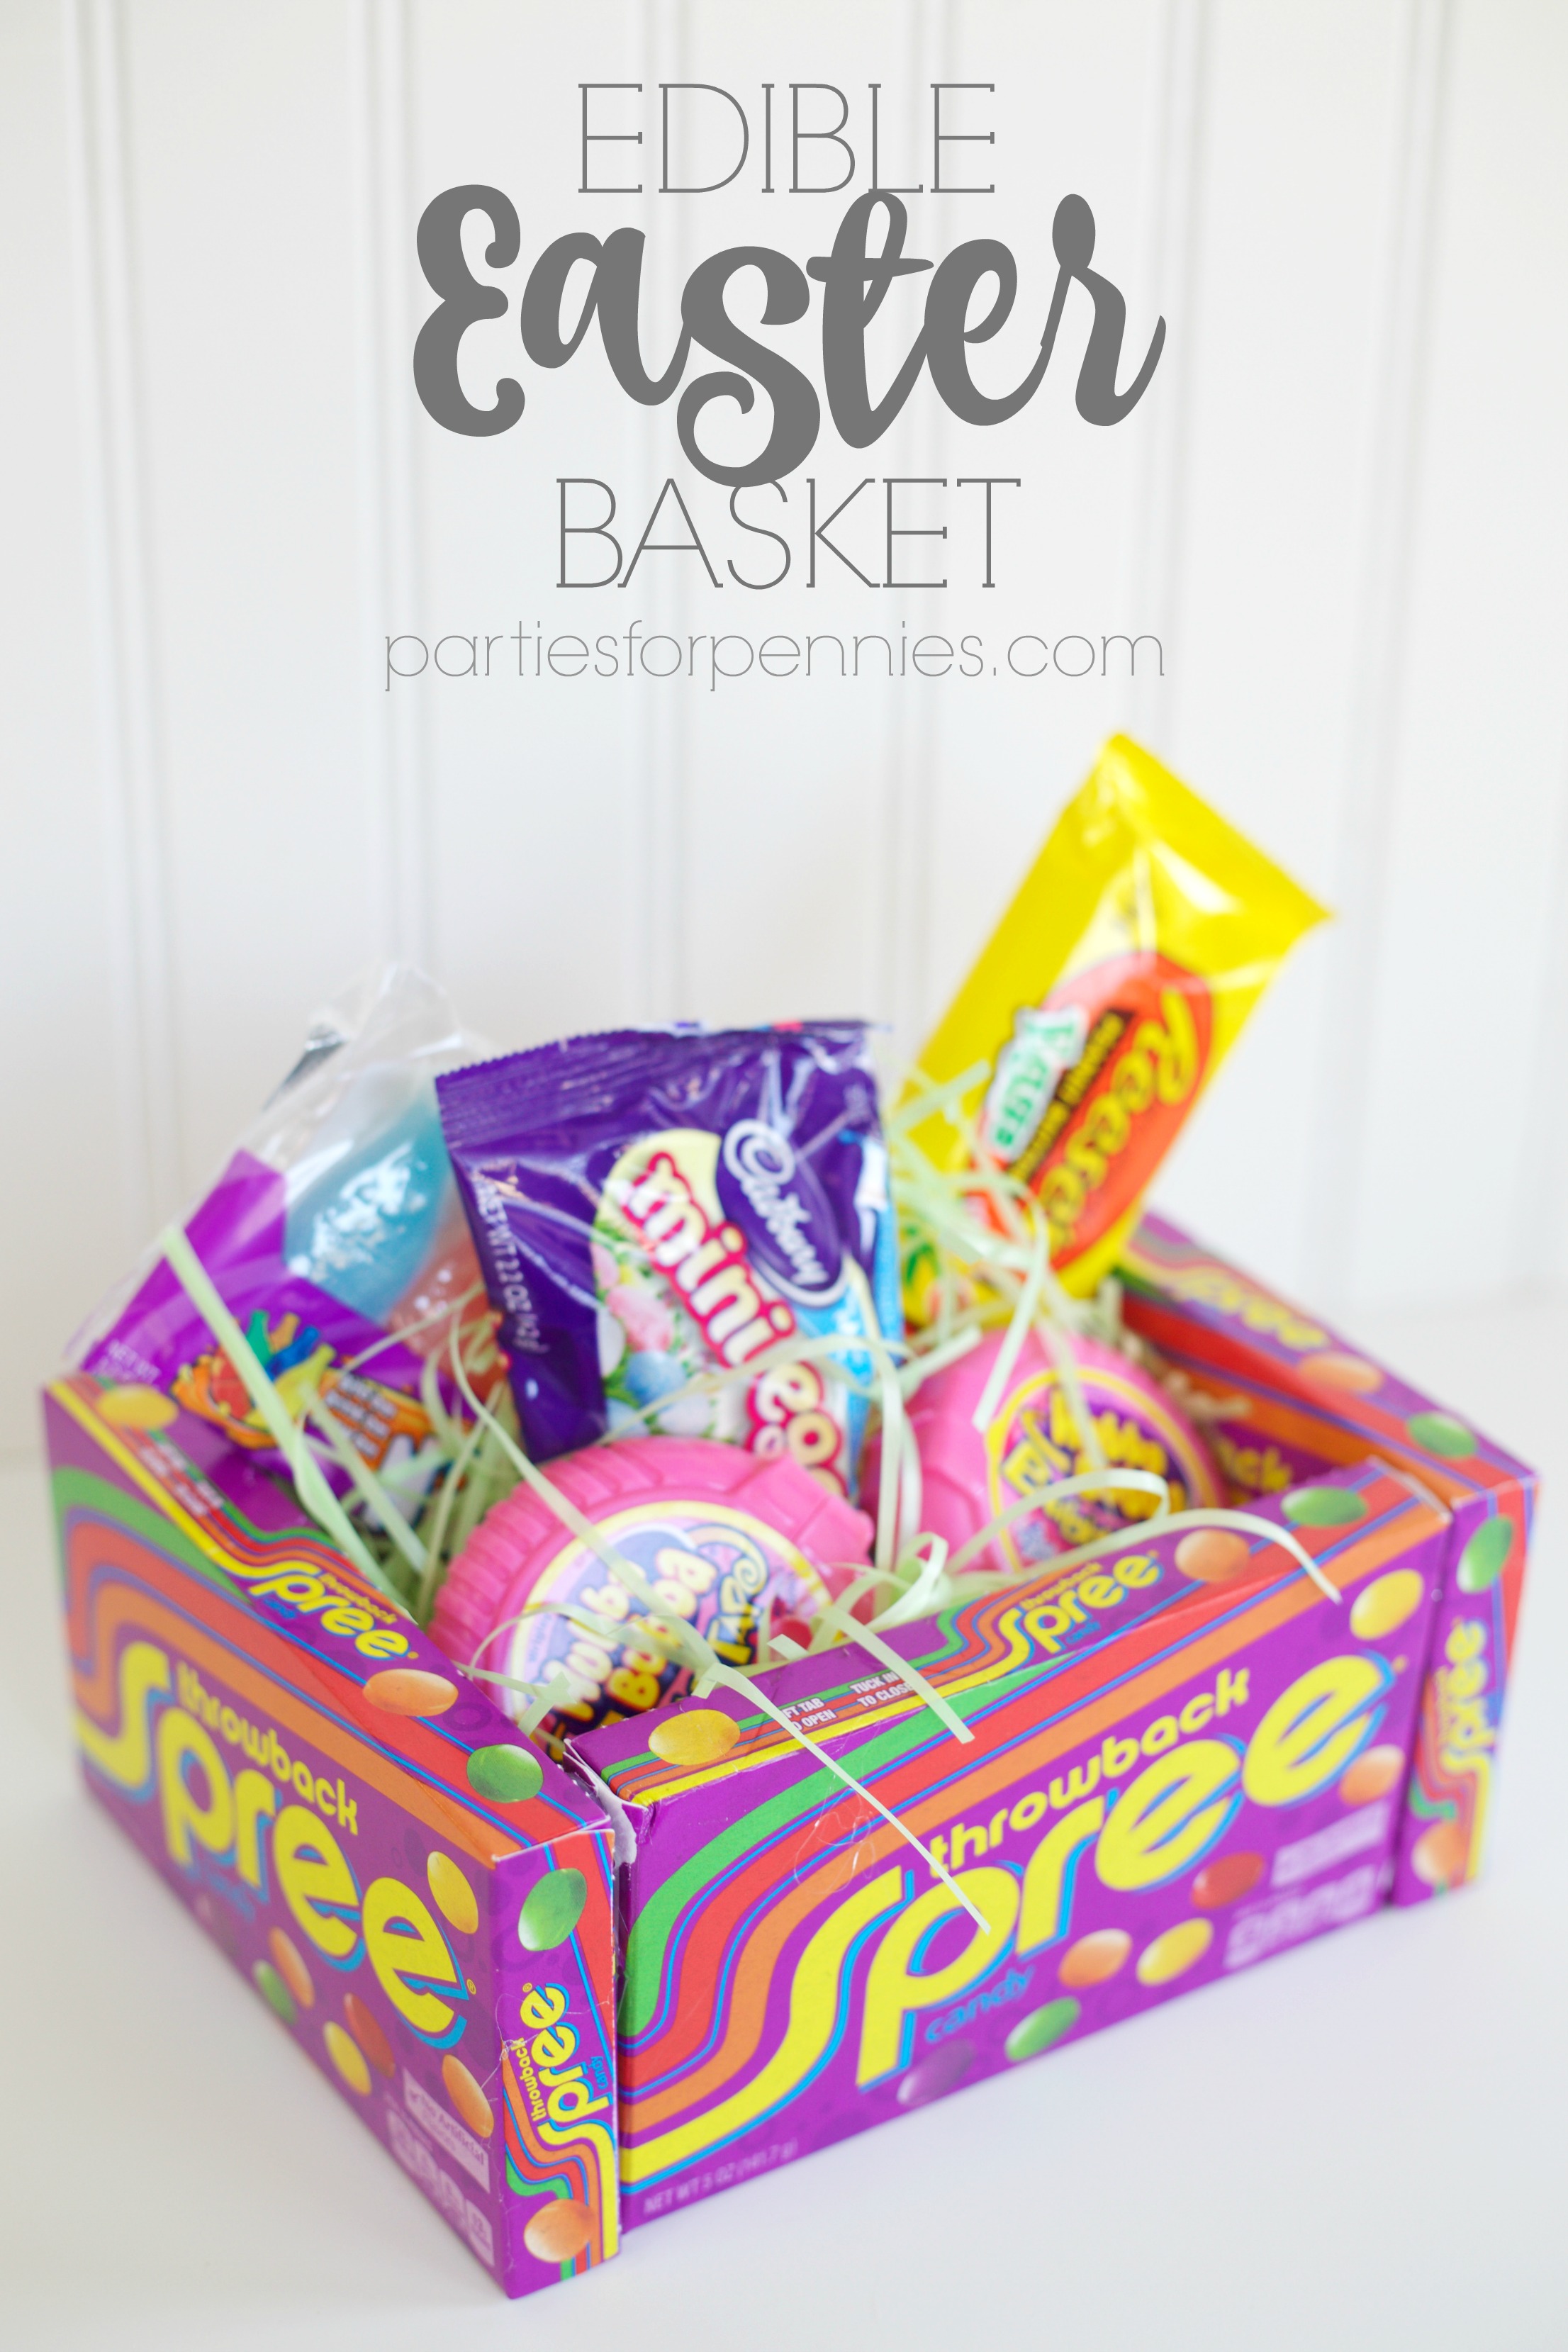 DIY Edible Easter Basket by PartiesforPennies.com | Make a fun & totally edible Easter basket! 